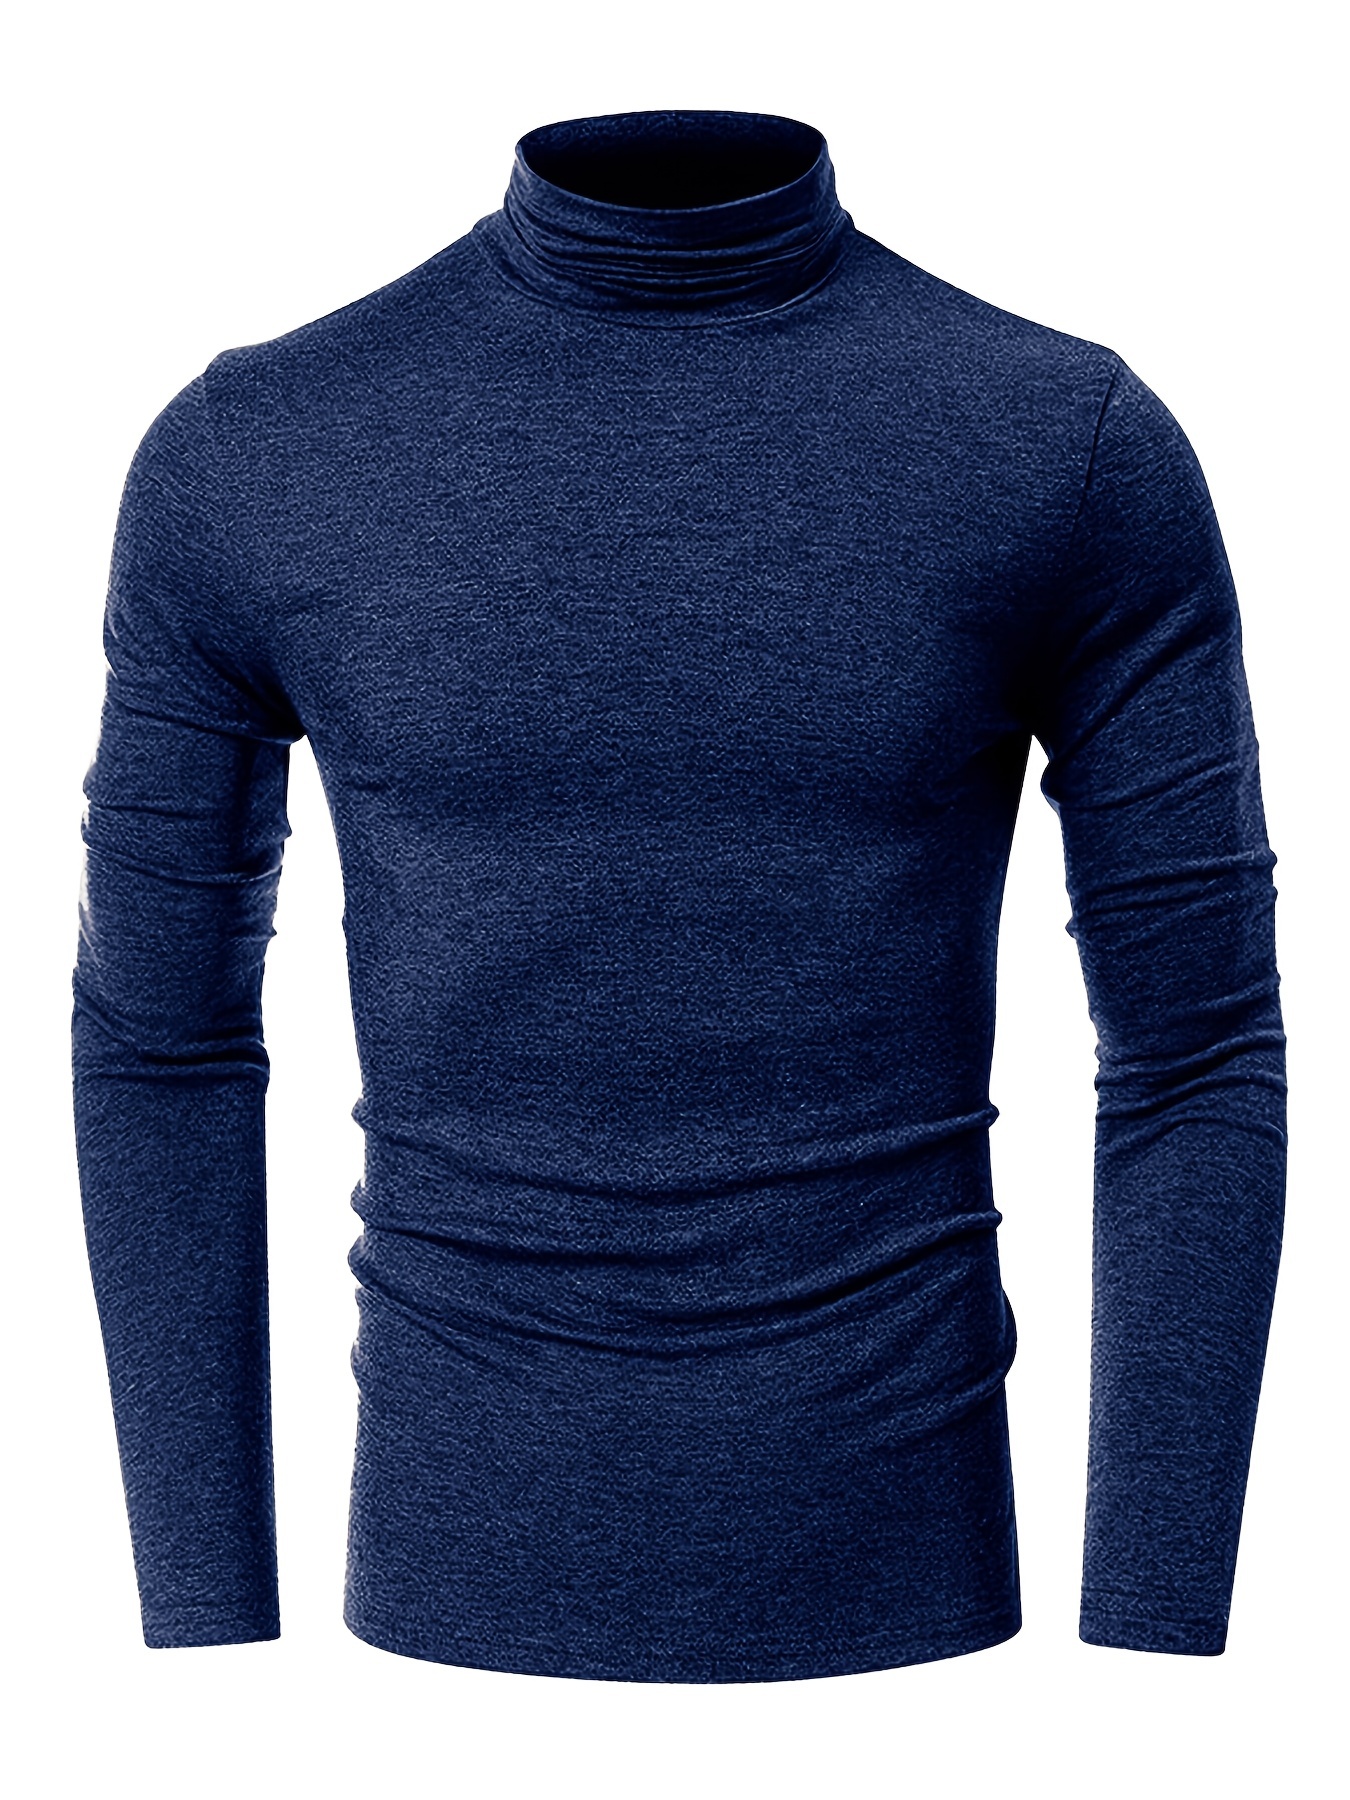 Camiseta de lana merino de manga larga con cuello alto para hombre -   México